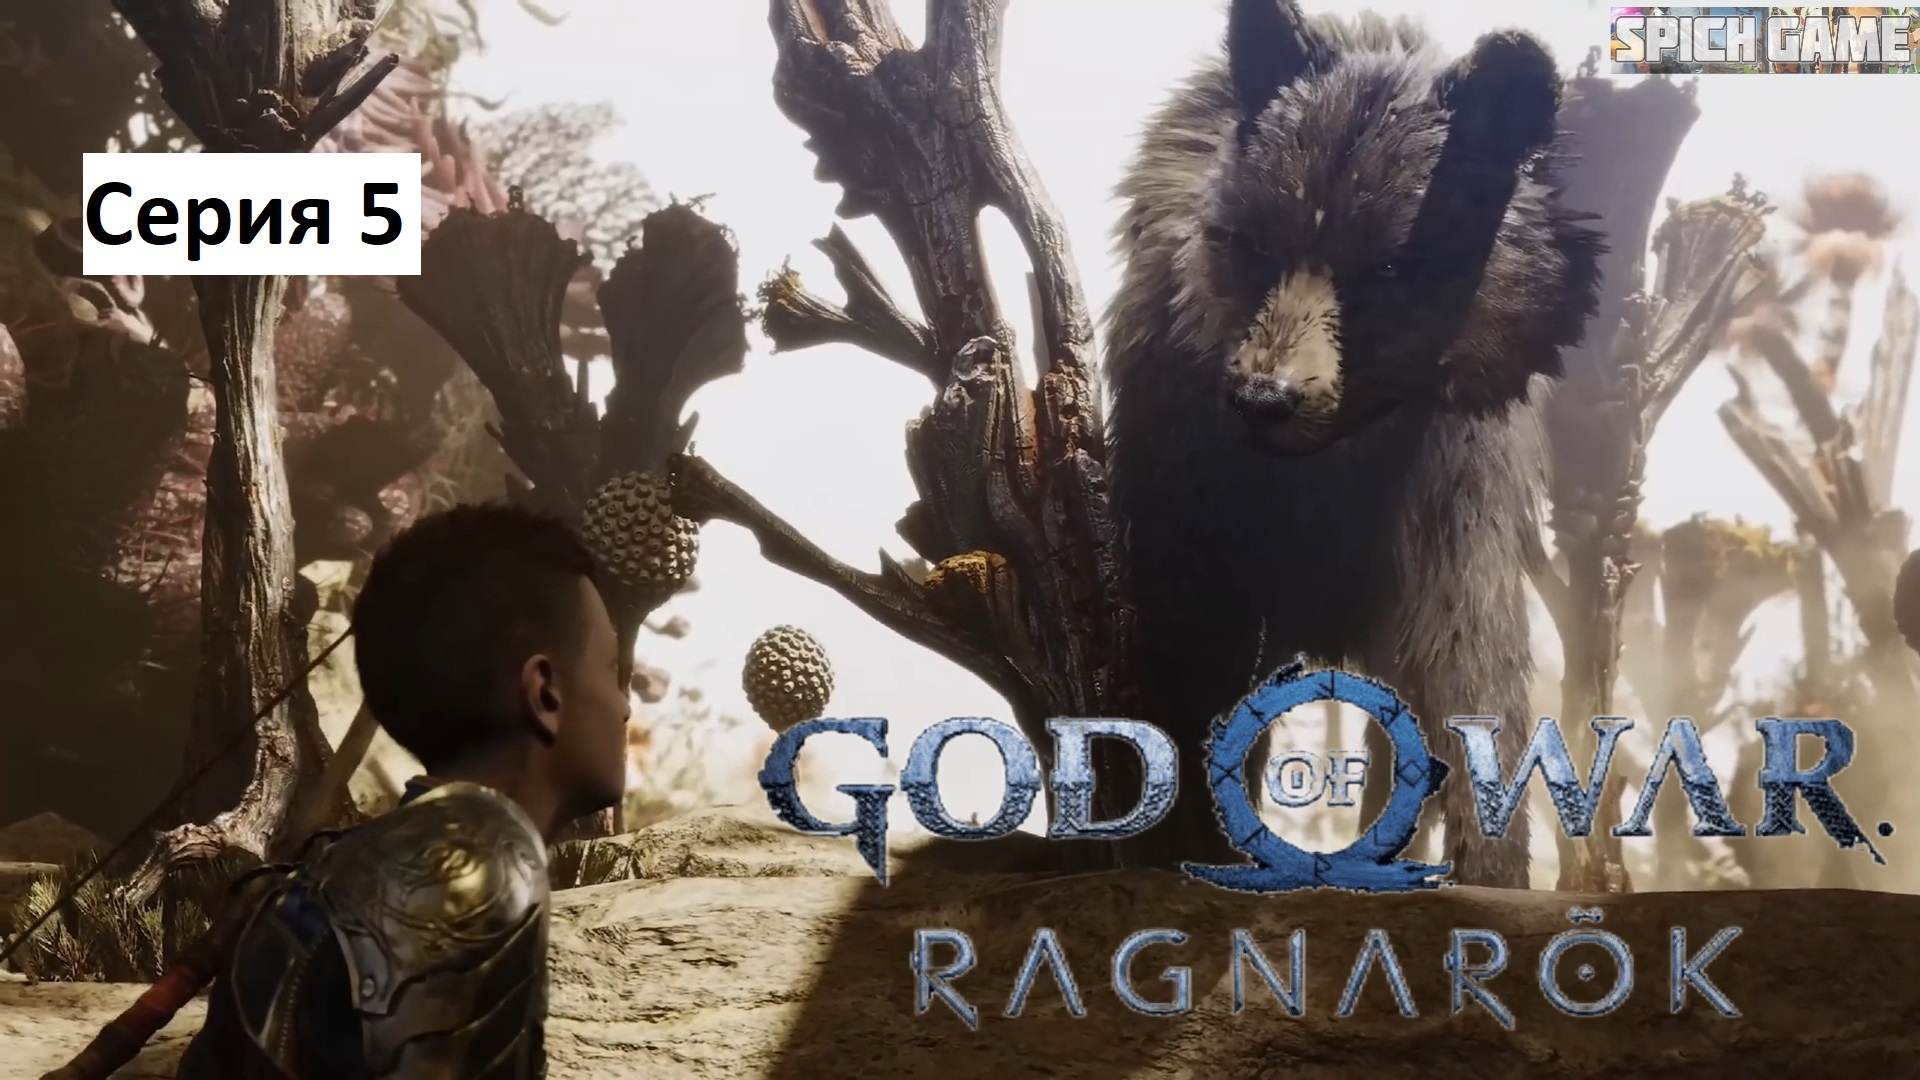 God of War Ragnarok Игрофильм на русском ● Сюжет без лишнего геймплея ● SpiCH GAME Серия 5